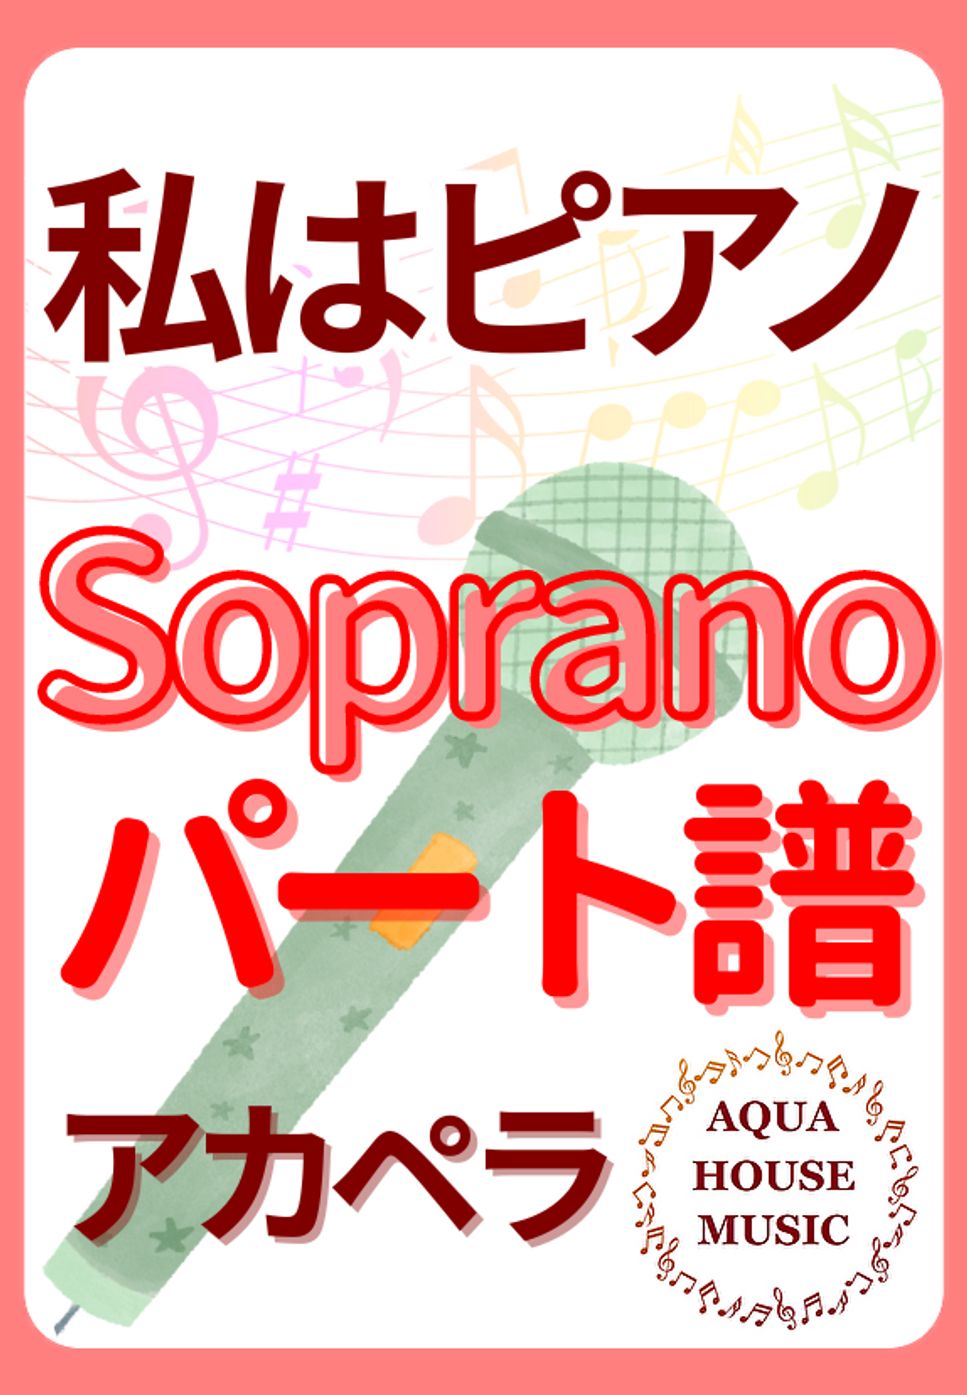 高田 みづえ - 私はピアノ (アカペラ楽譜♪Sopranoパート譜) by 飯田 亜紗子